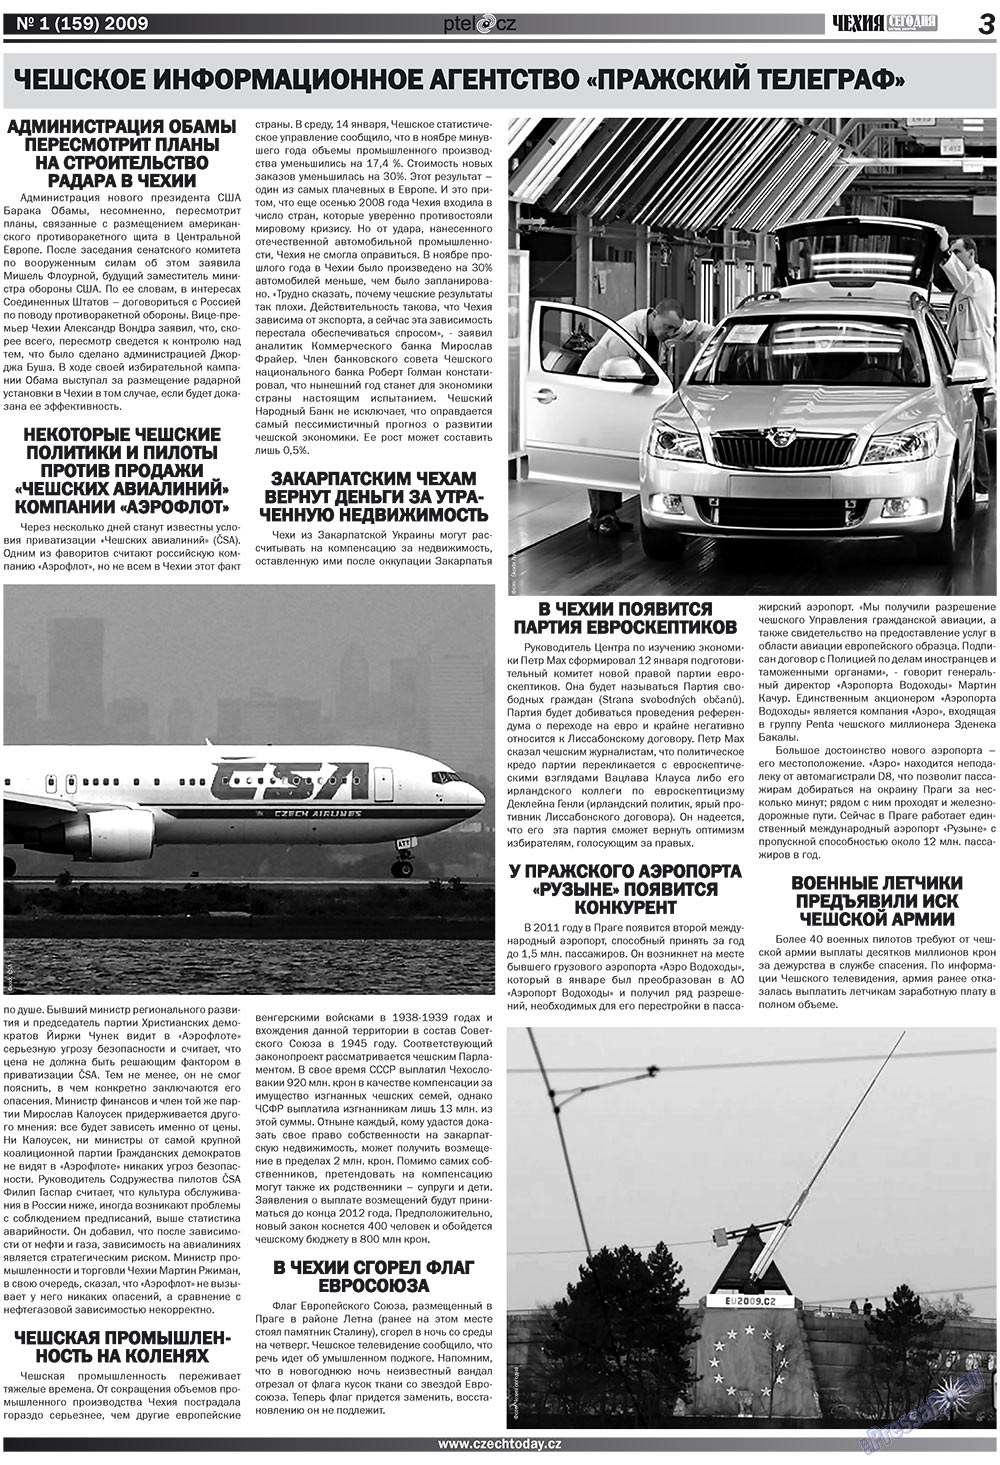 Чехия сегодня, журнал. 2009 №1 стр.3